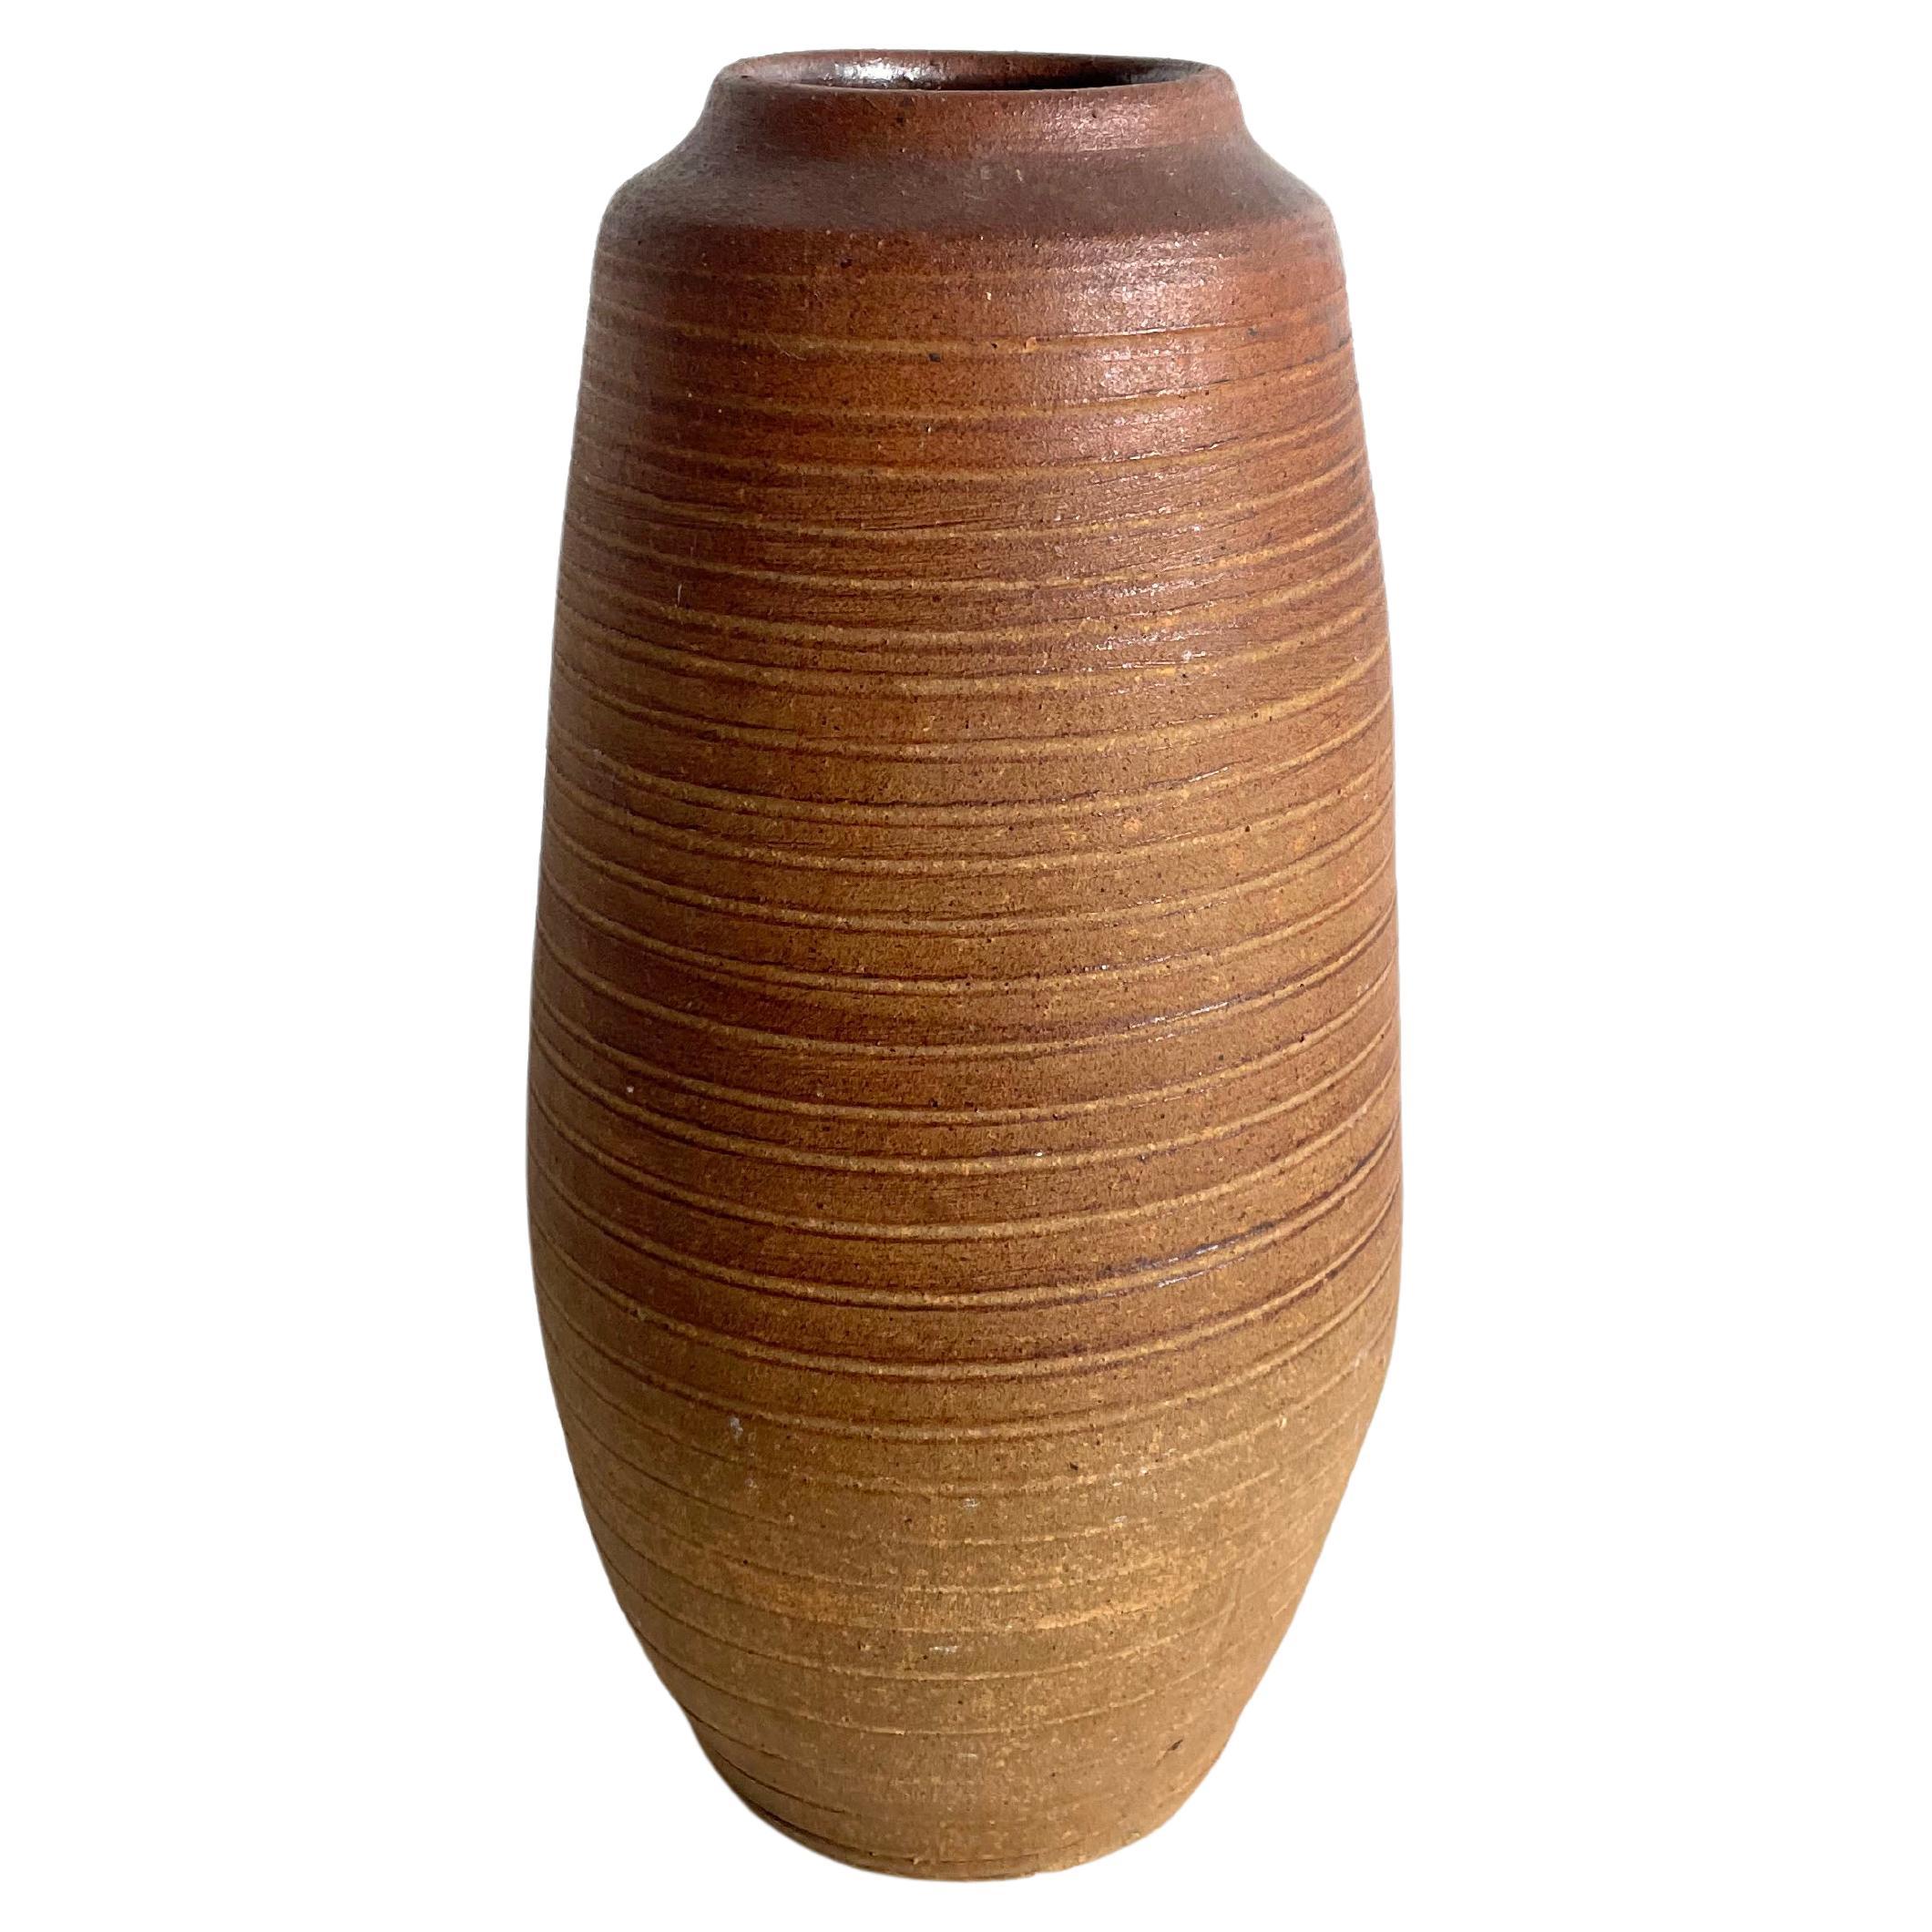 Teracotta-Vase im Vintage-Stil mit strukturierter Oberfläche, Wabi Sabi, Studio Pottery, markiert